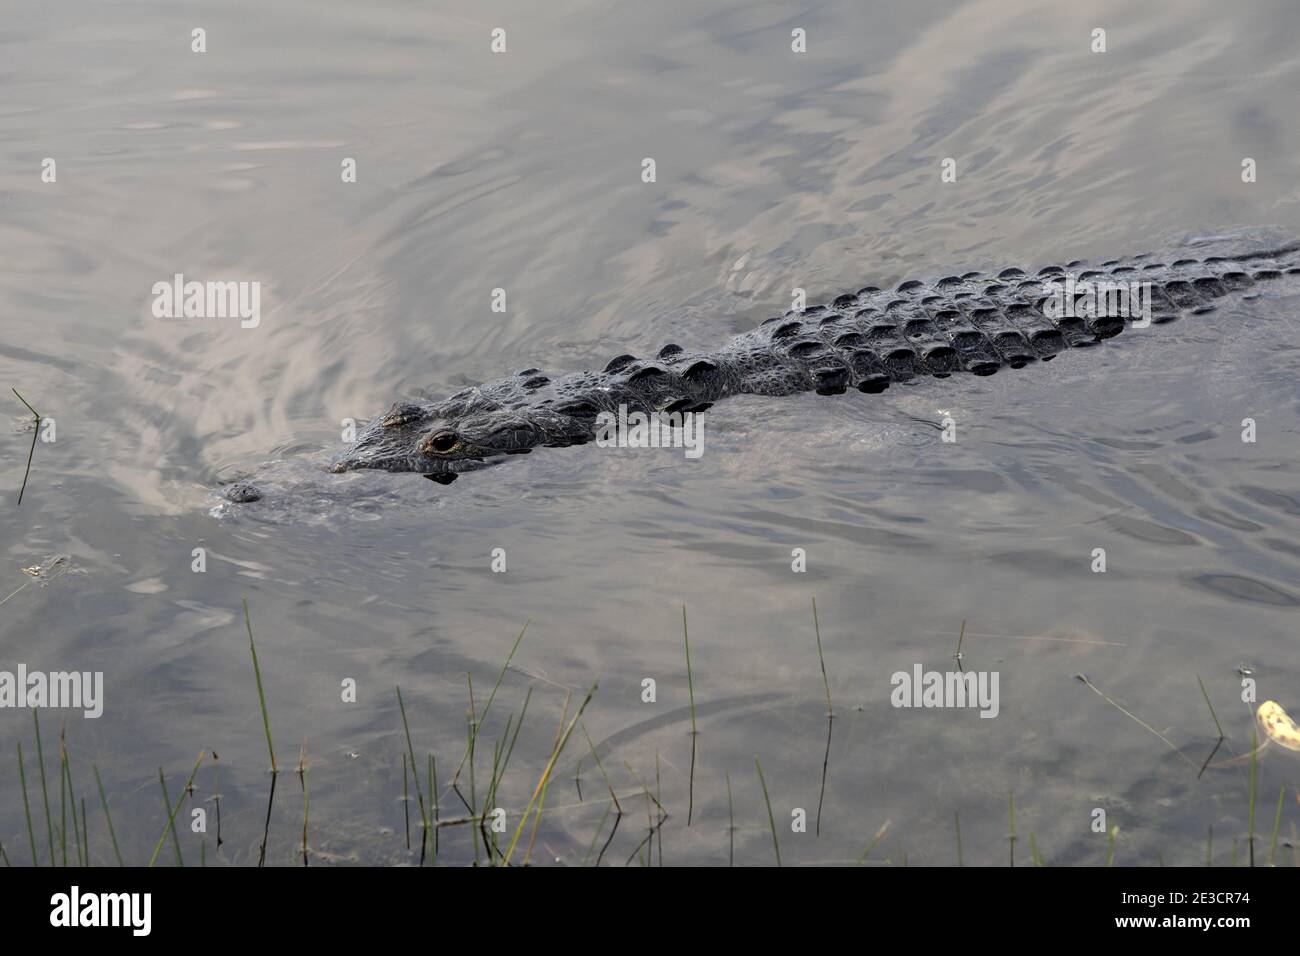 Guatemala, Central America: Crocodile swimming in the water Stock Photo